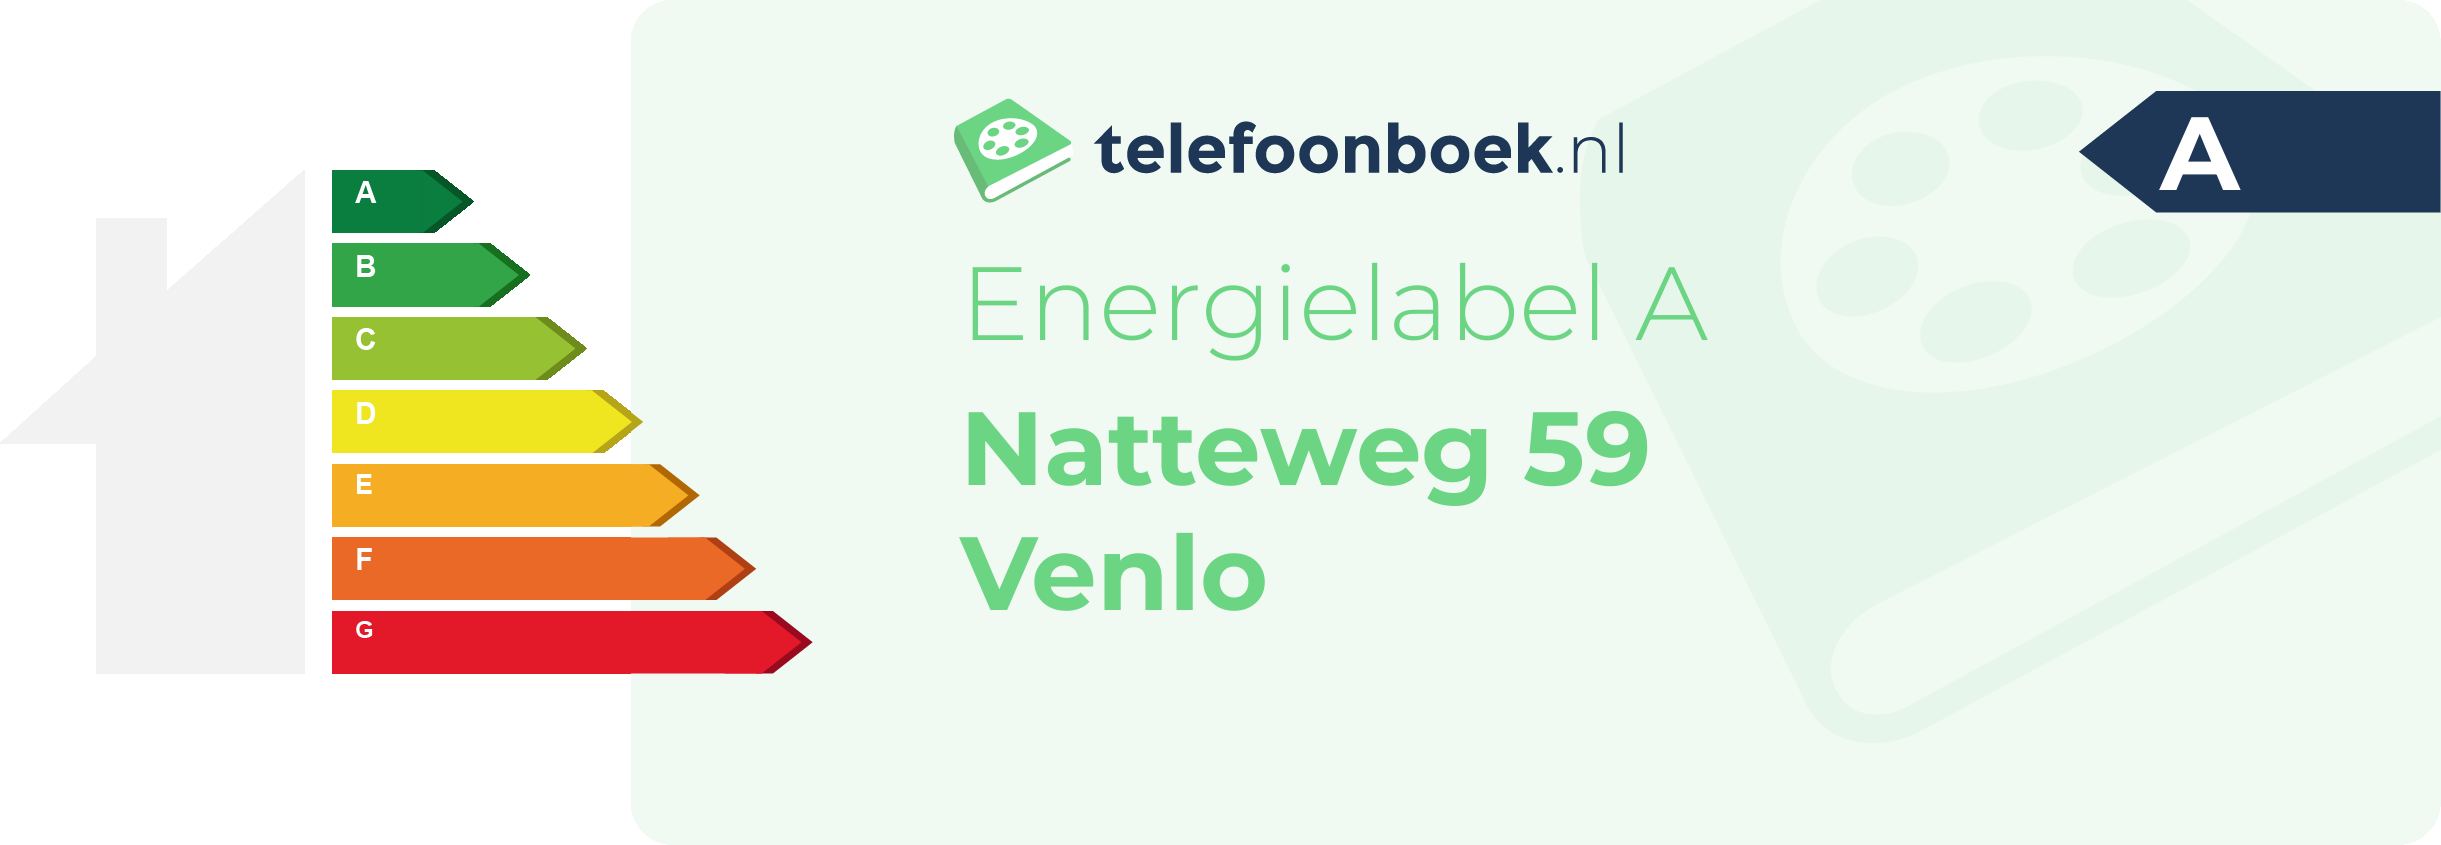 Energielabel Natteweg 59 Venlo